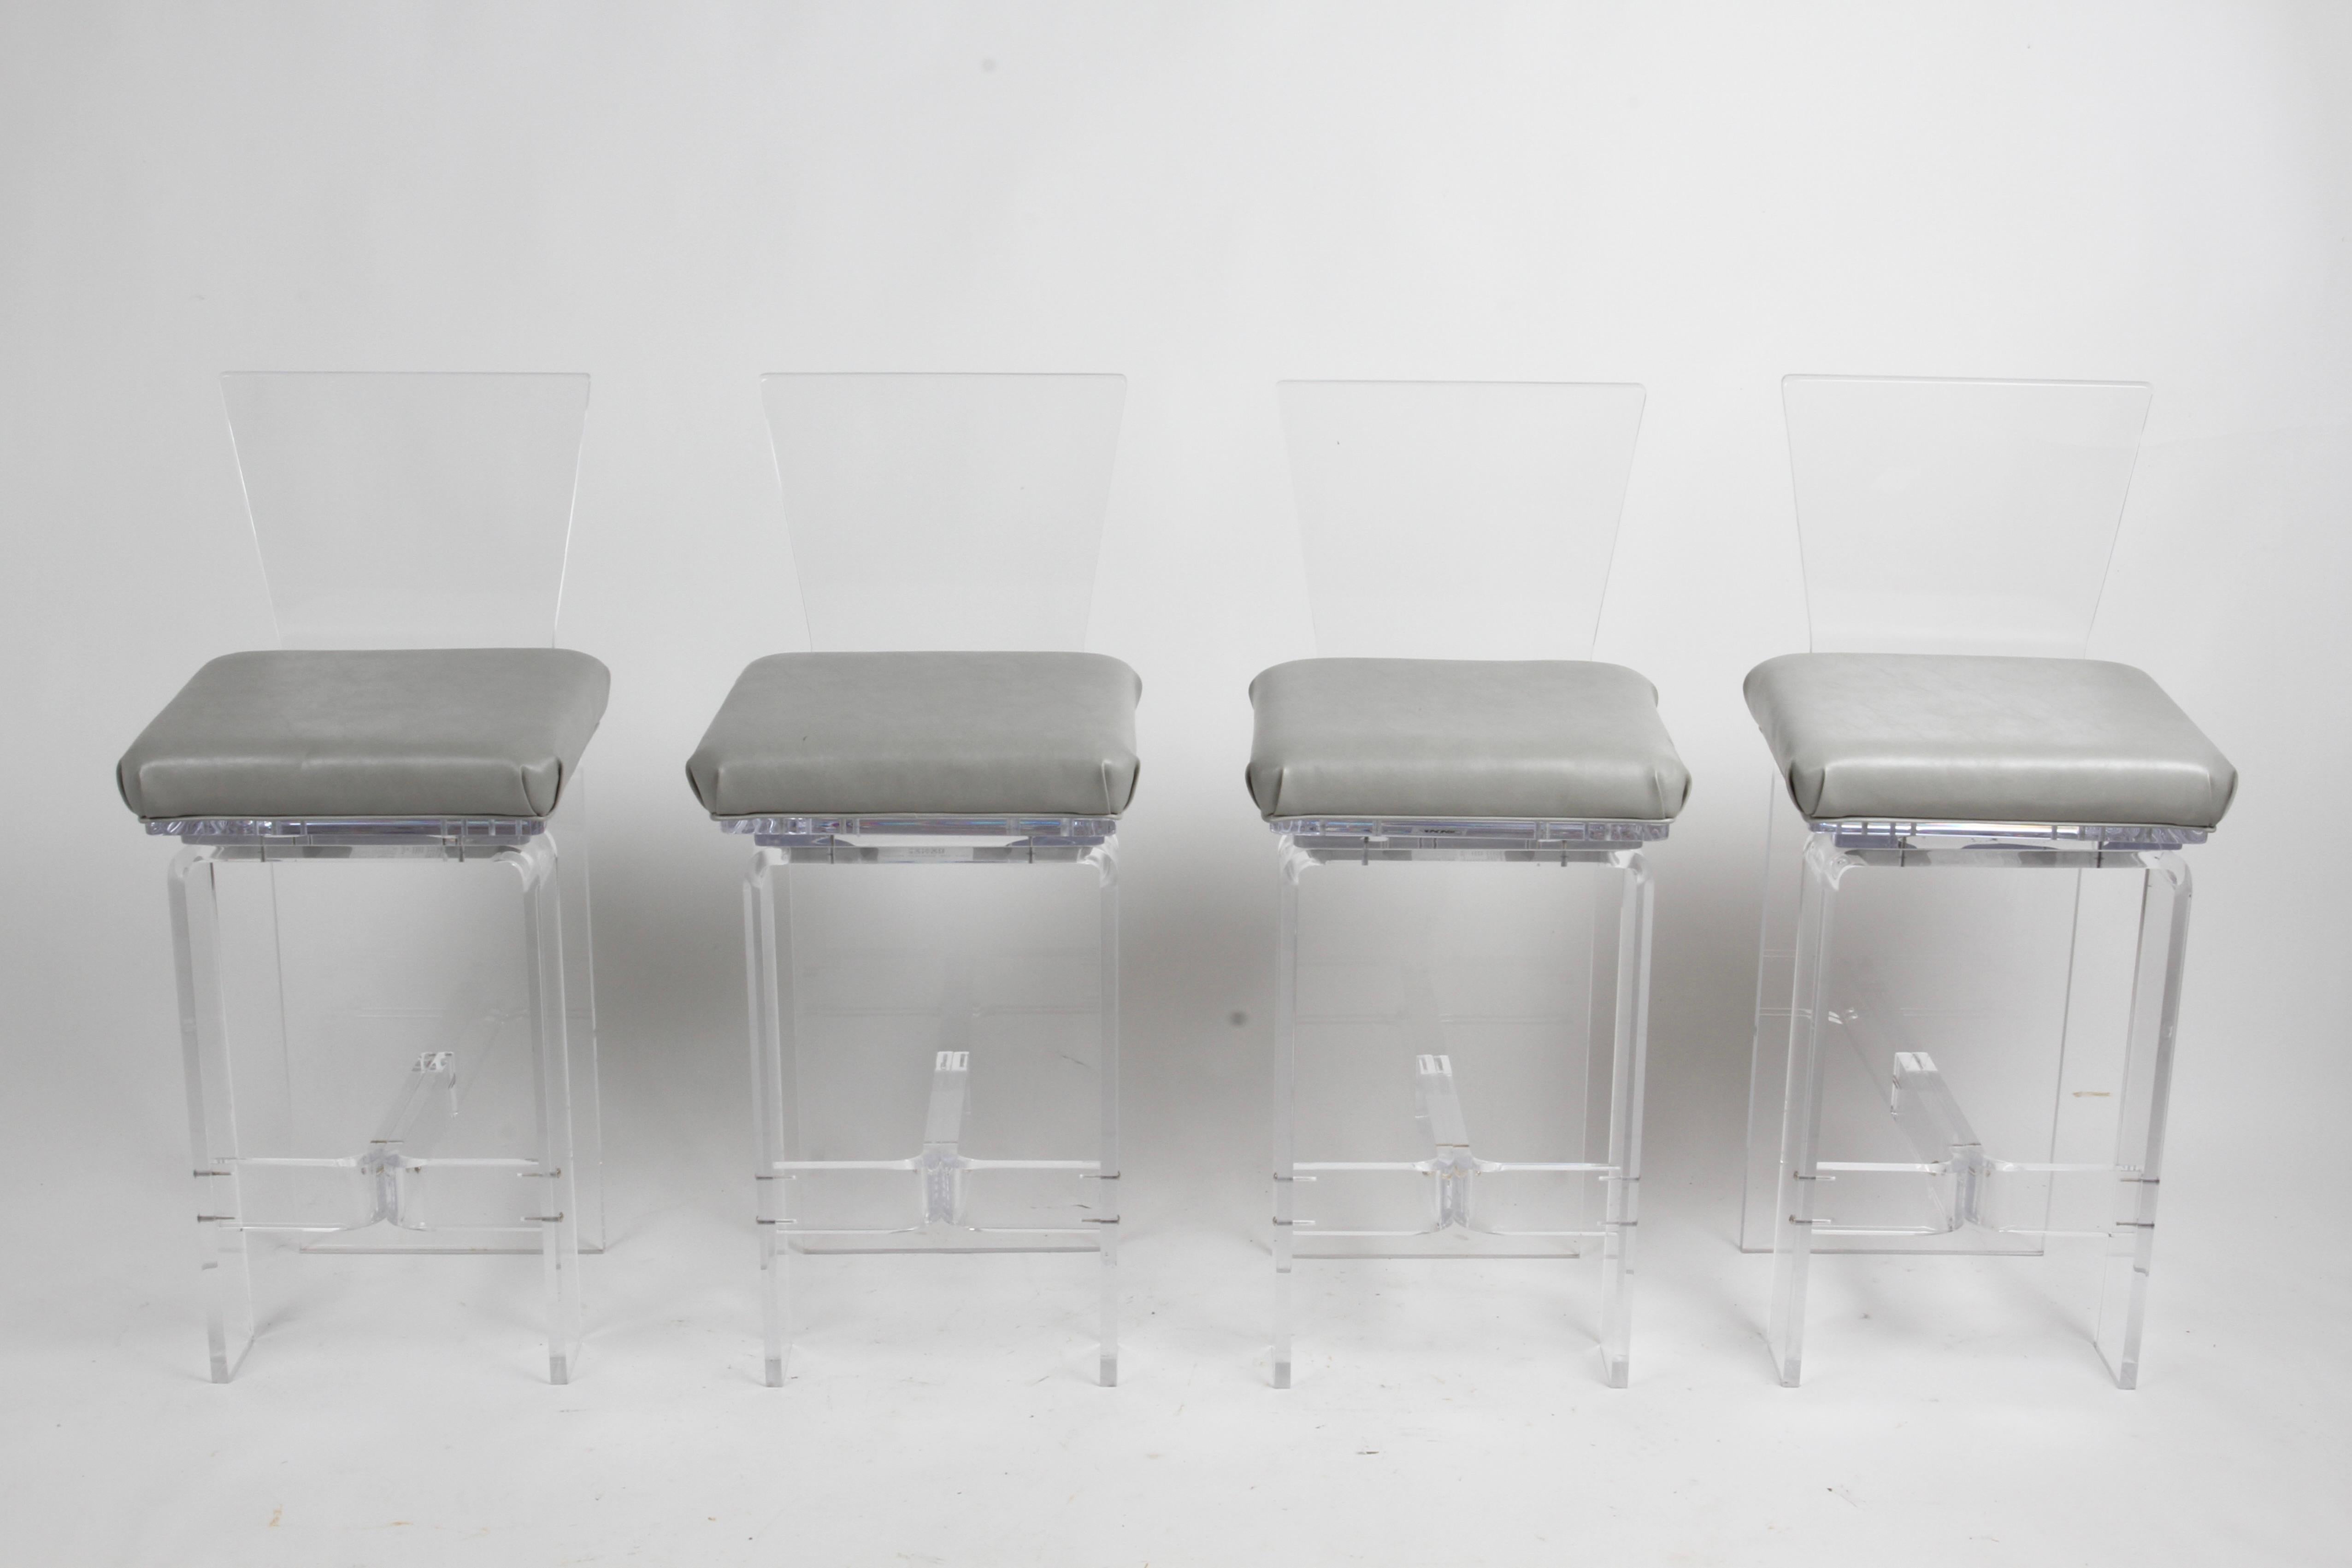 Vintage 1980 Hollywood Regency style set of four Acrylic 360° swivel bar stools with high backs, footrest and grey vinyl padded seats by AKKO INC. En très bon état d'origine, aucun dommage, seulement quelques petites éraflures. Dans le style de